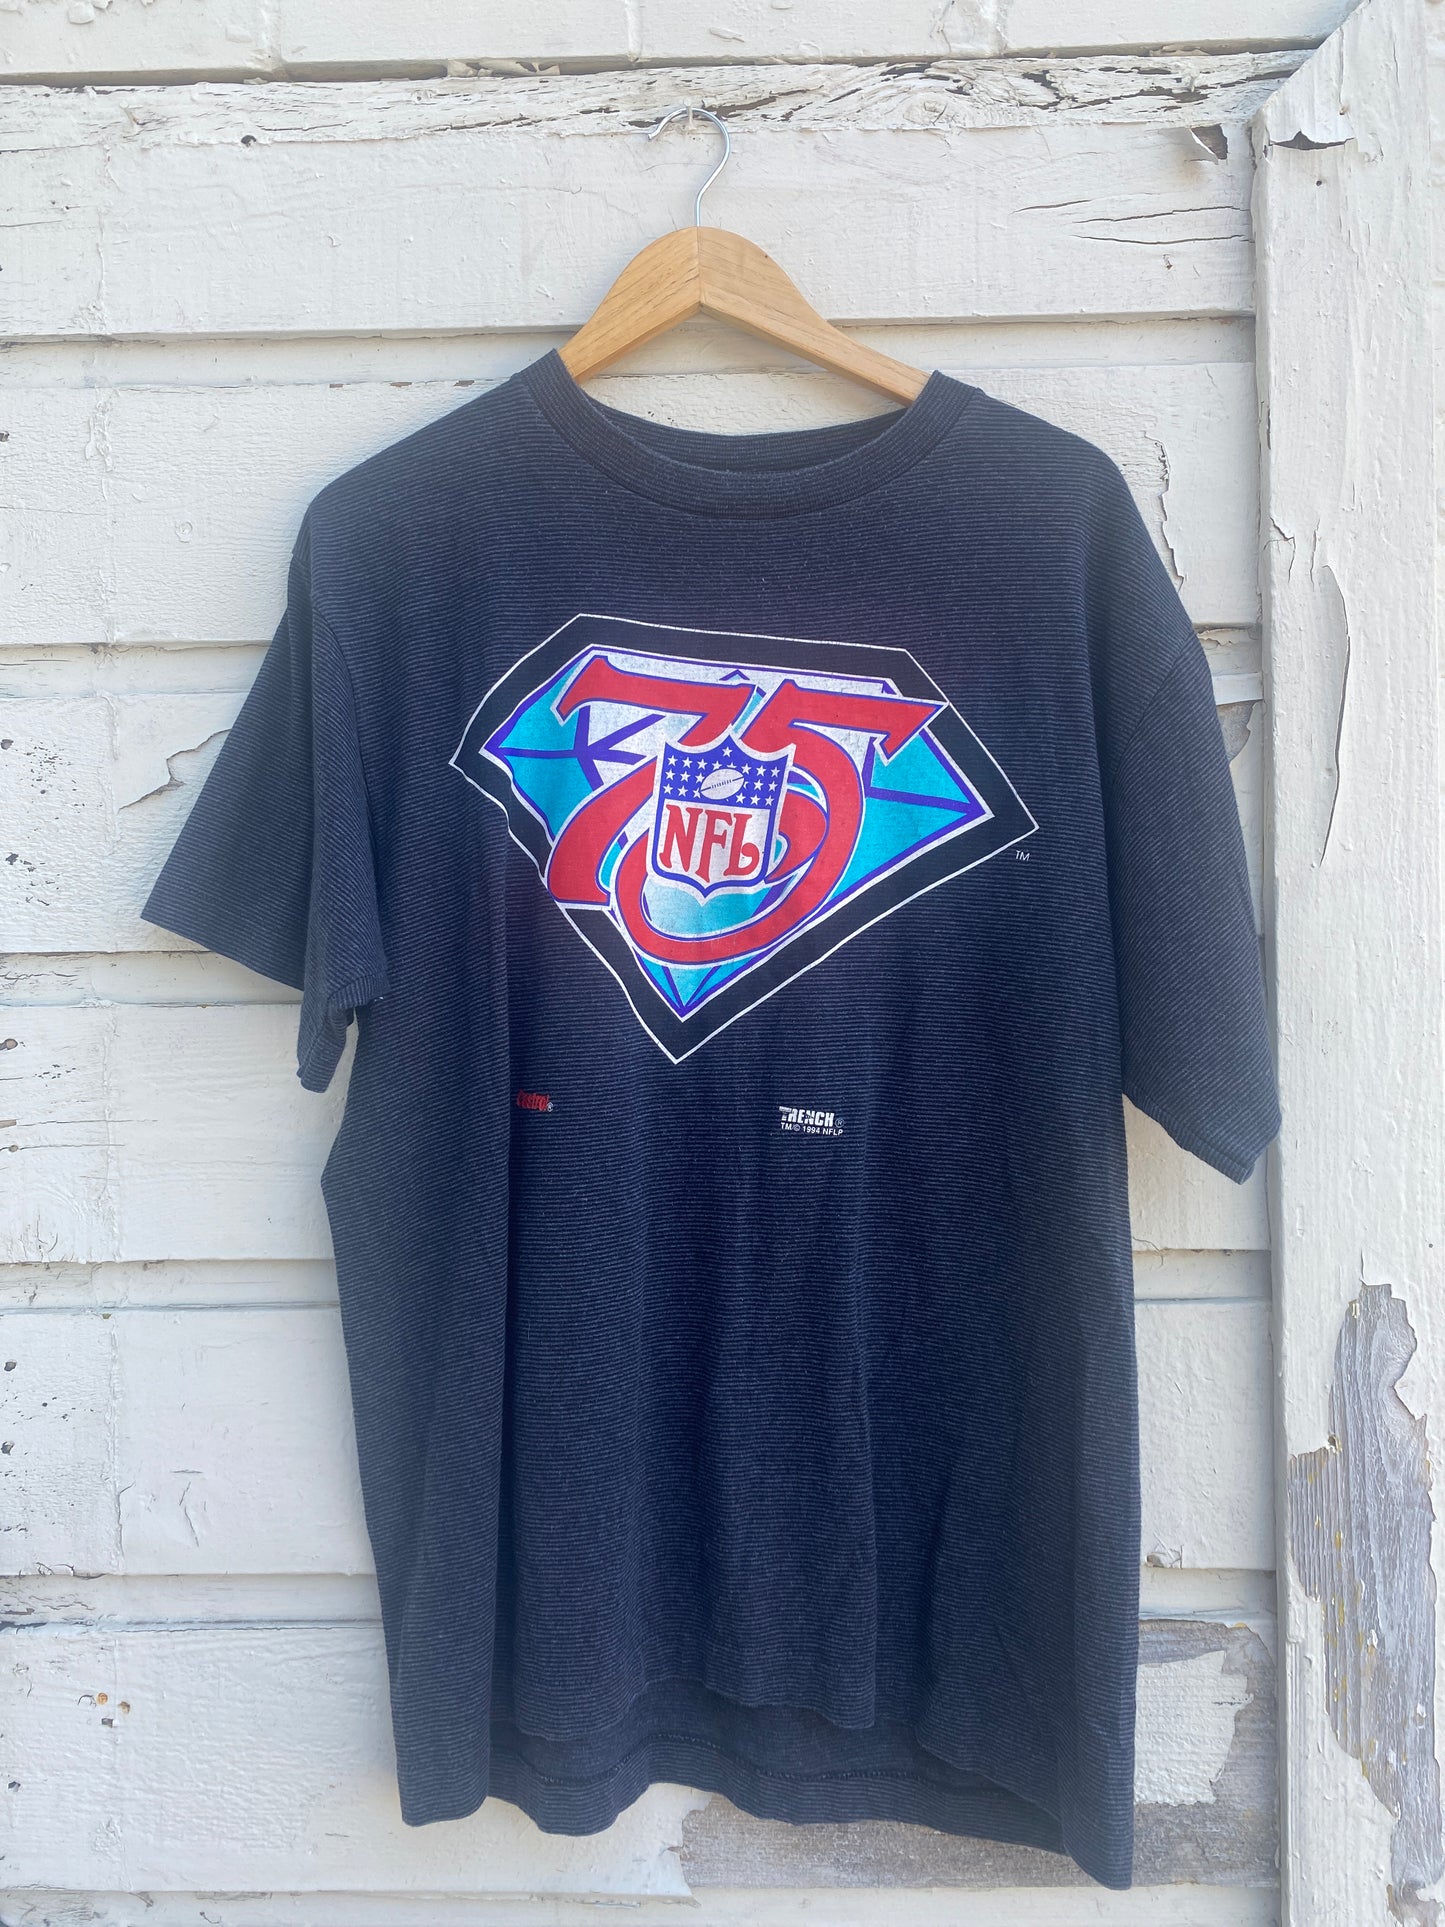 Vintage 1994 Super Bowl NFL Tshirt XL